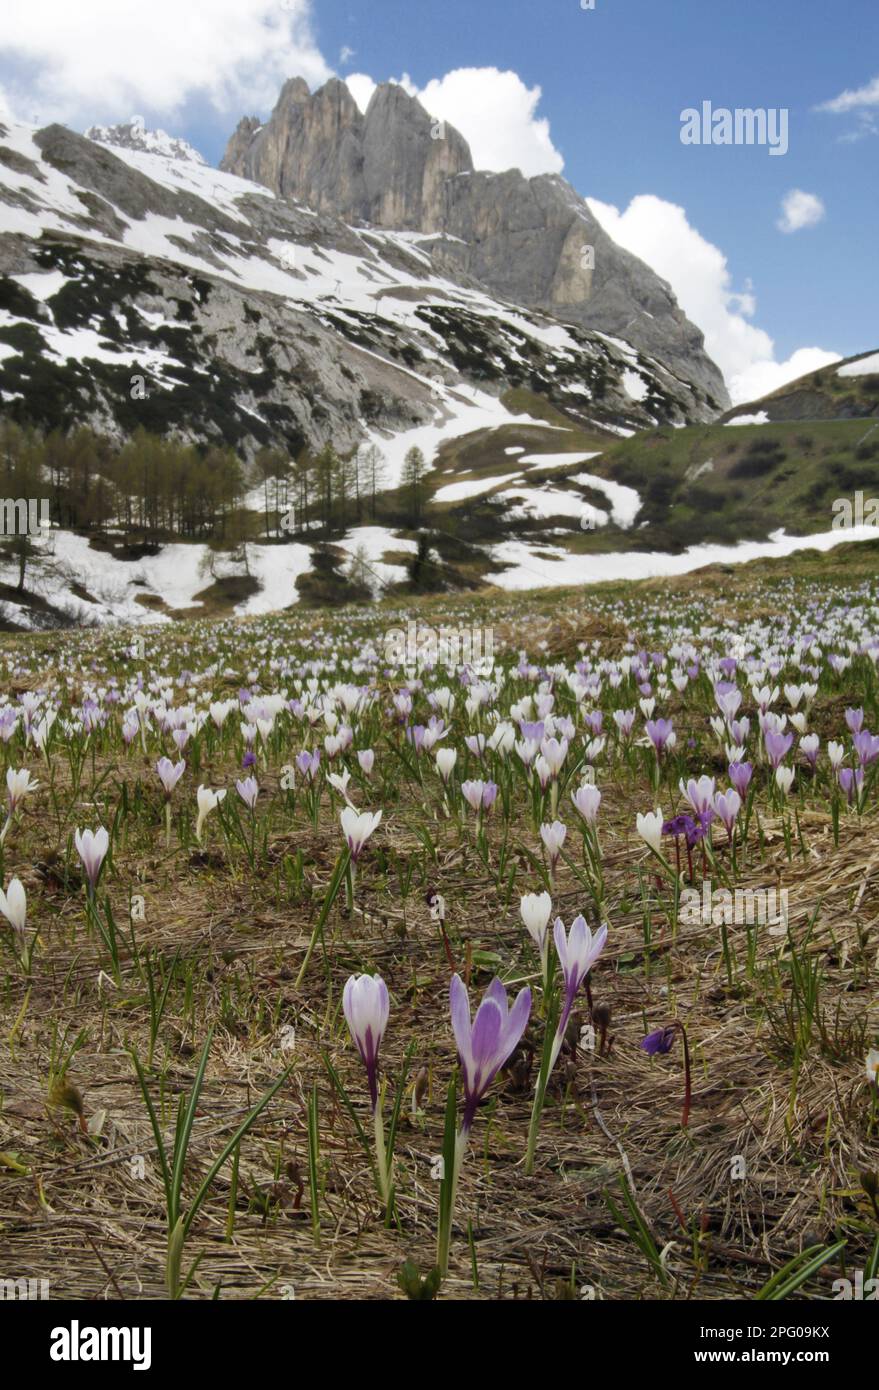 Spring crocus (Crocus vernus), spring saffron, crocus, iris family, Spring Crocus flowering mass, growing in alpine habitat Stock Photo